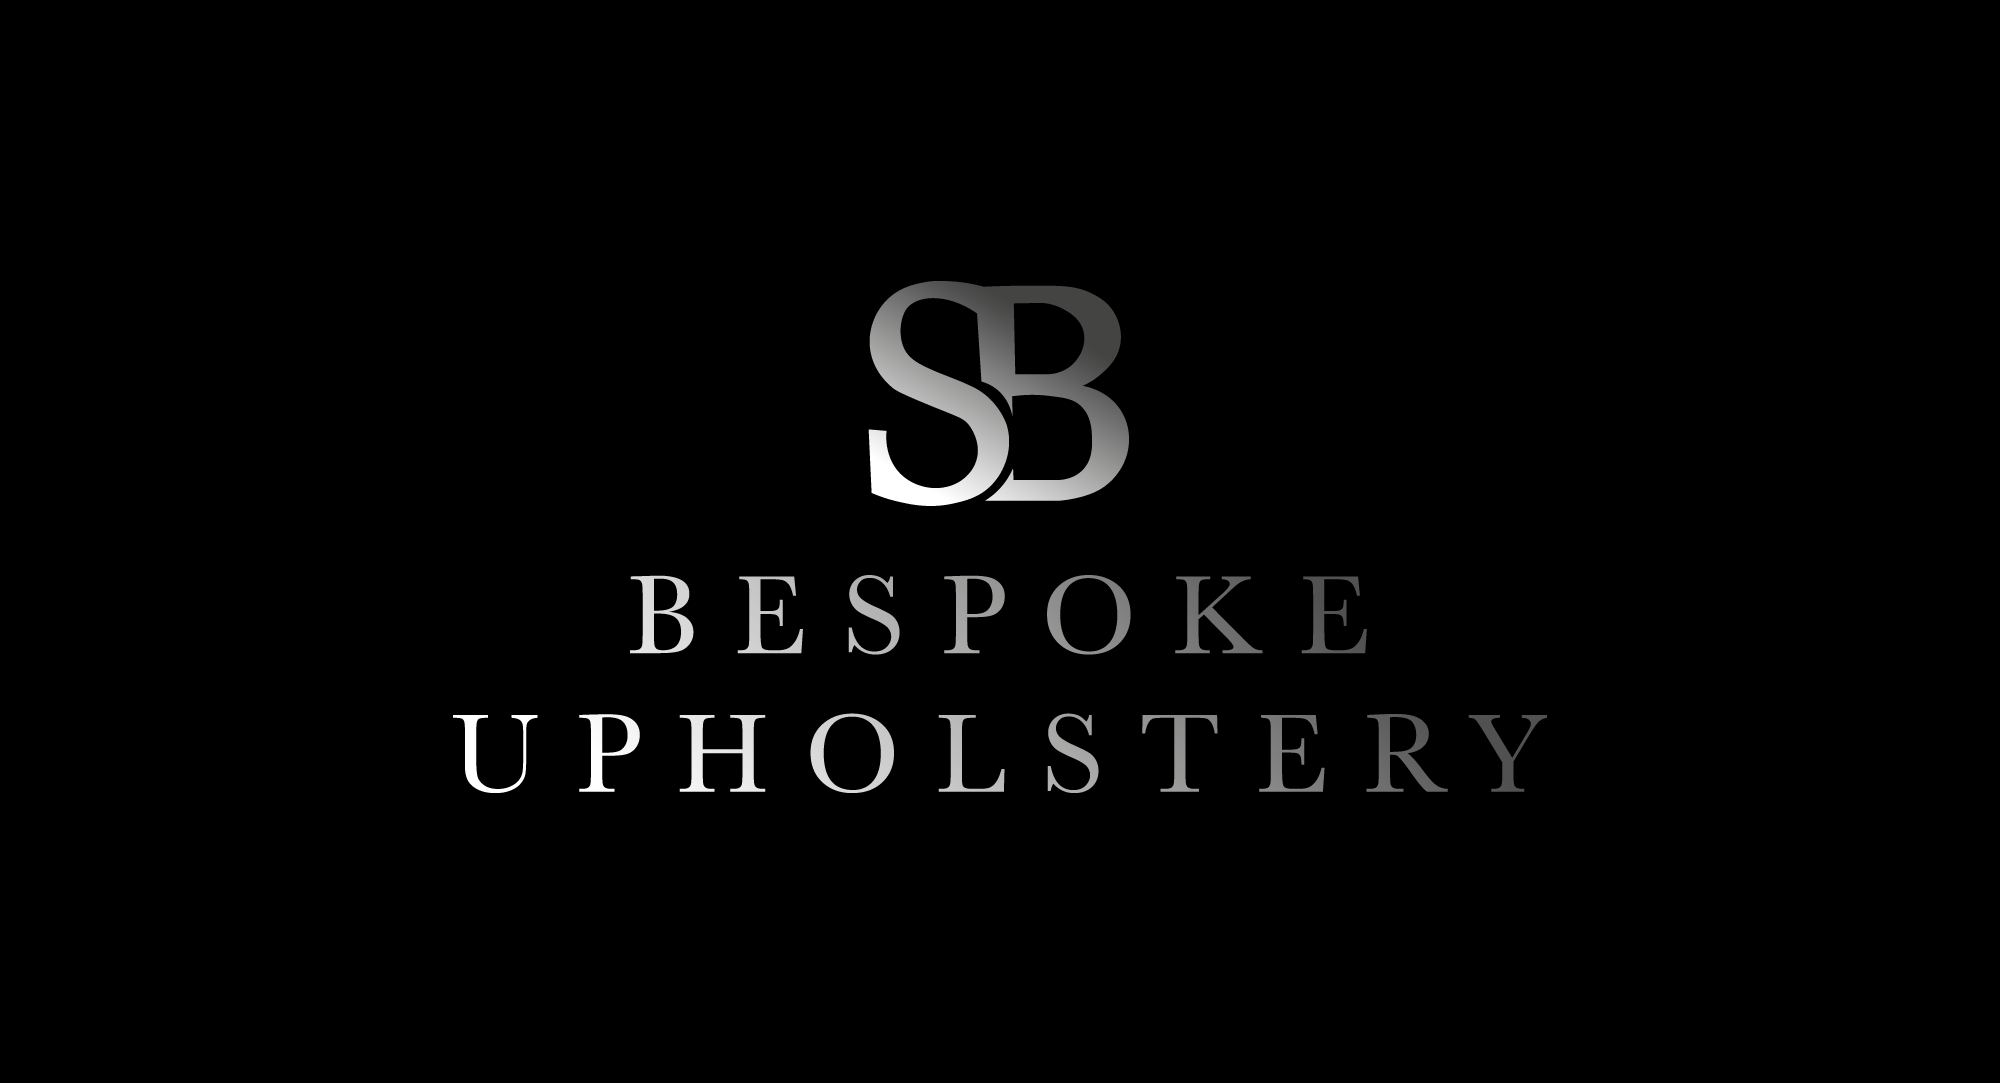 SB Bespoke Upholstery